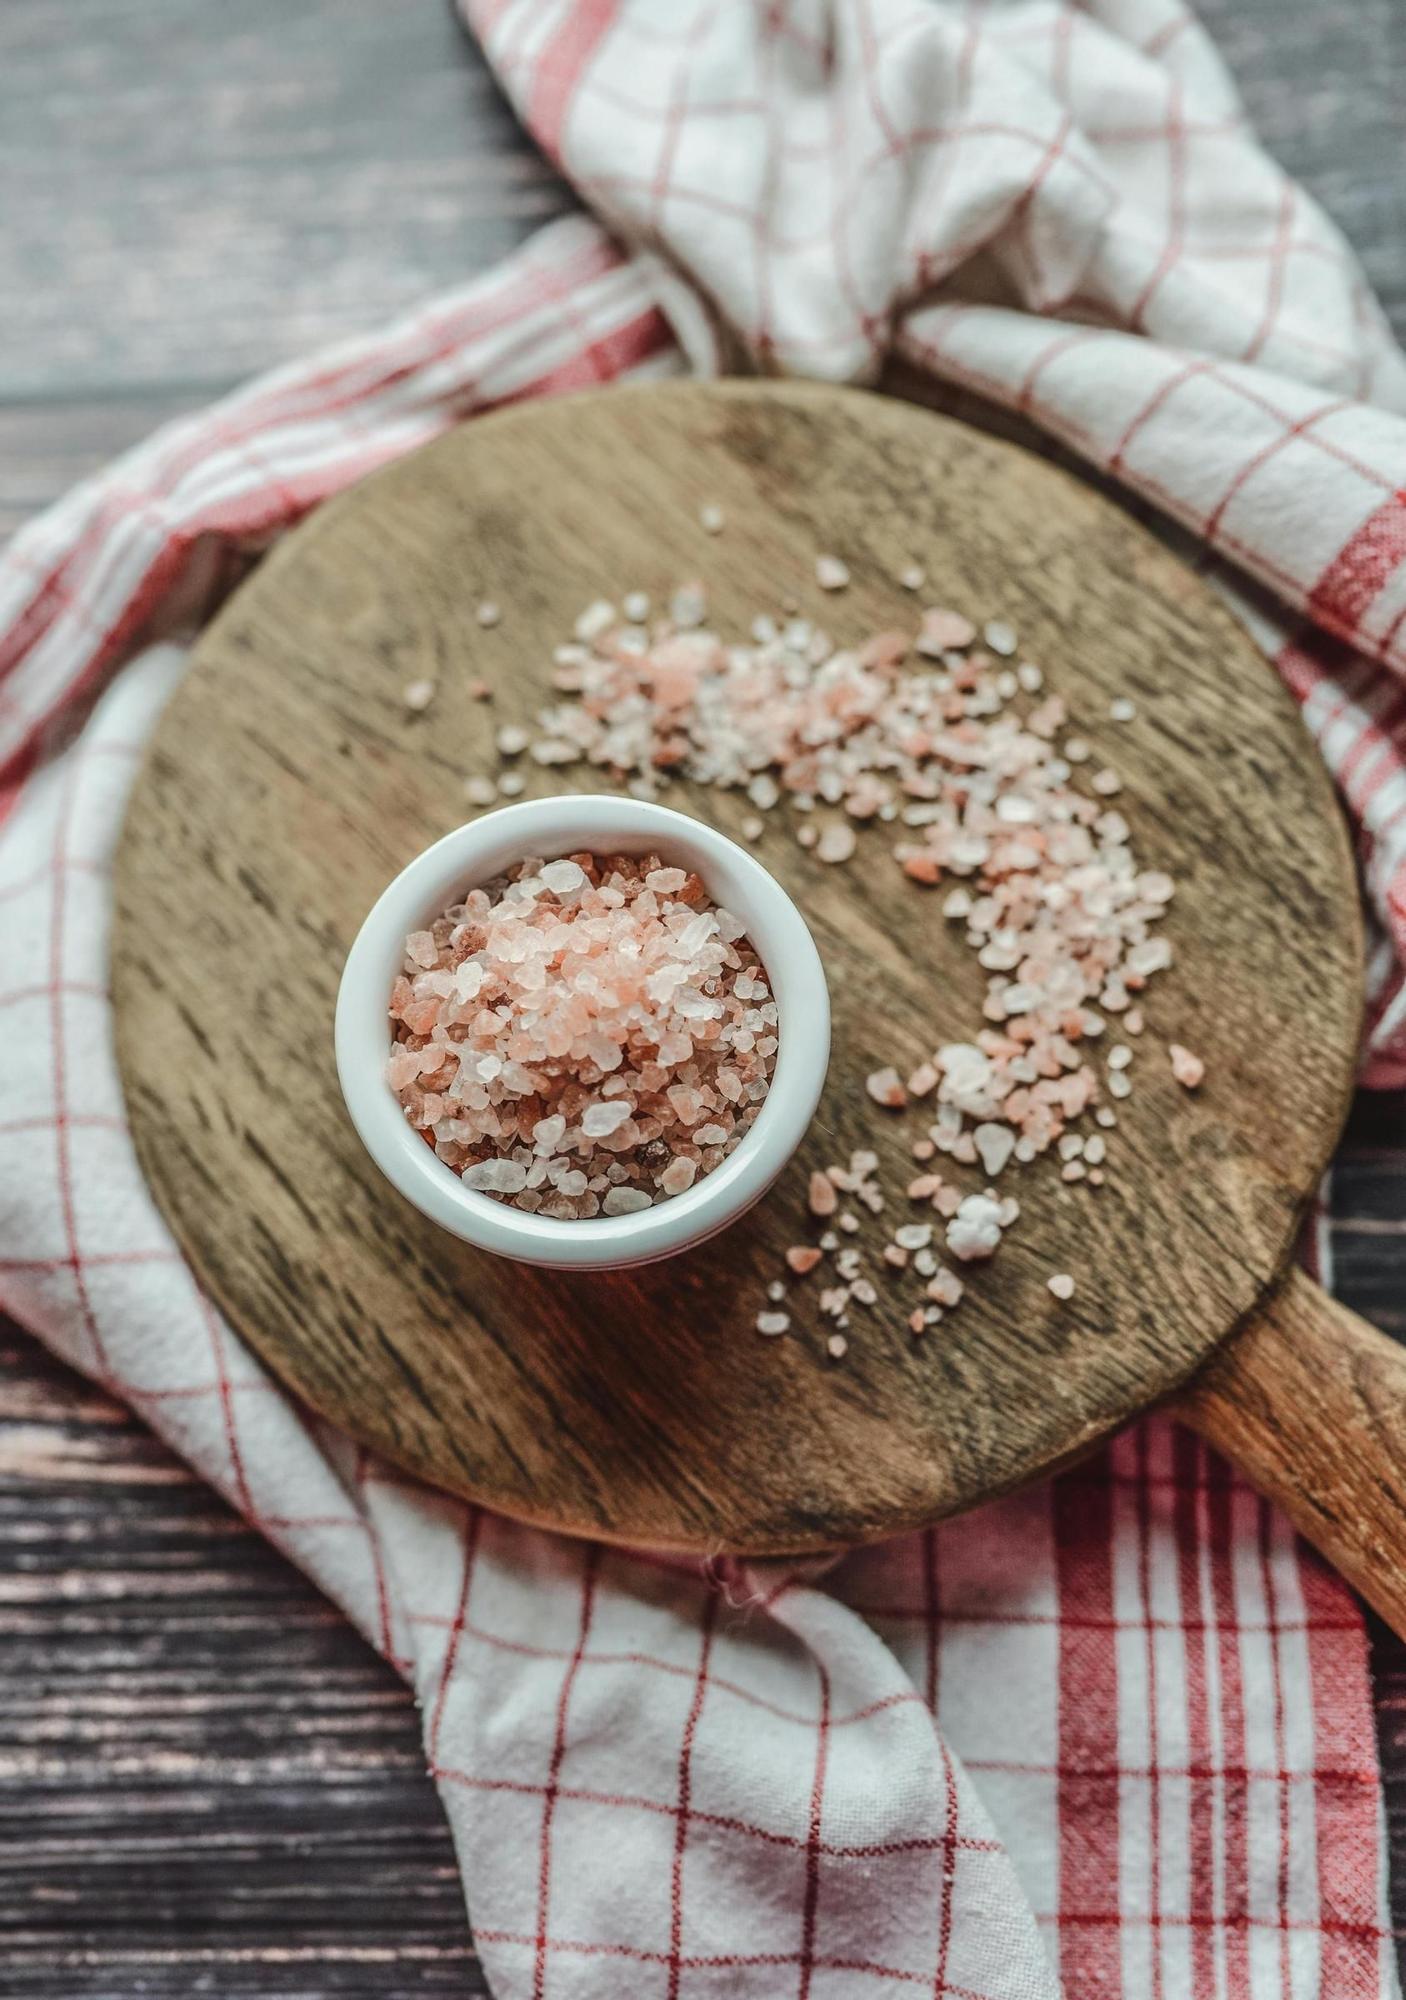 La sal es esencial en nuestras cocinas